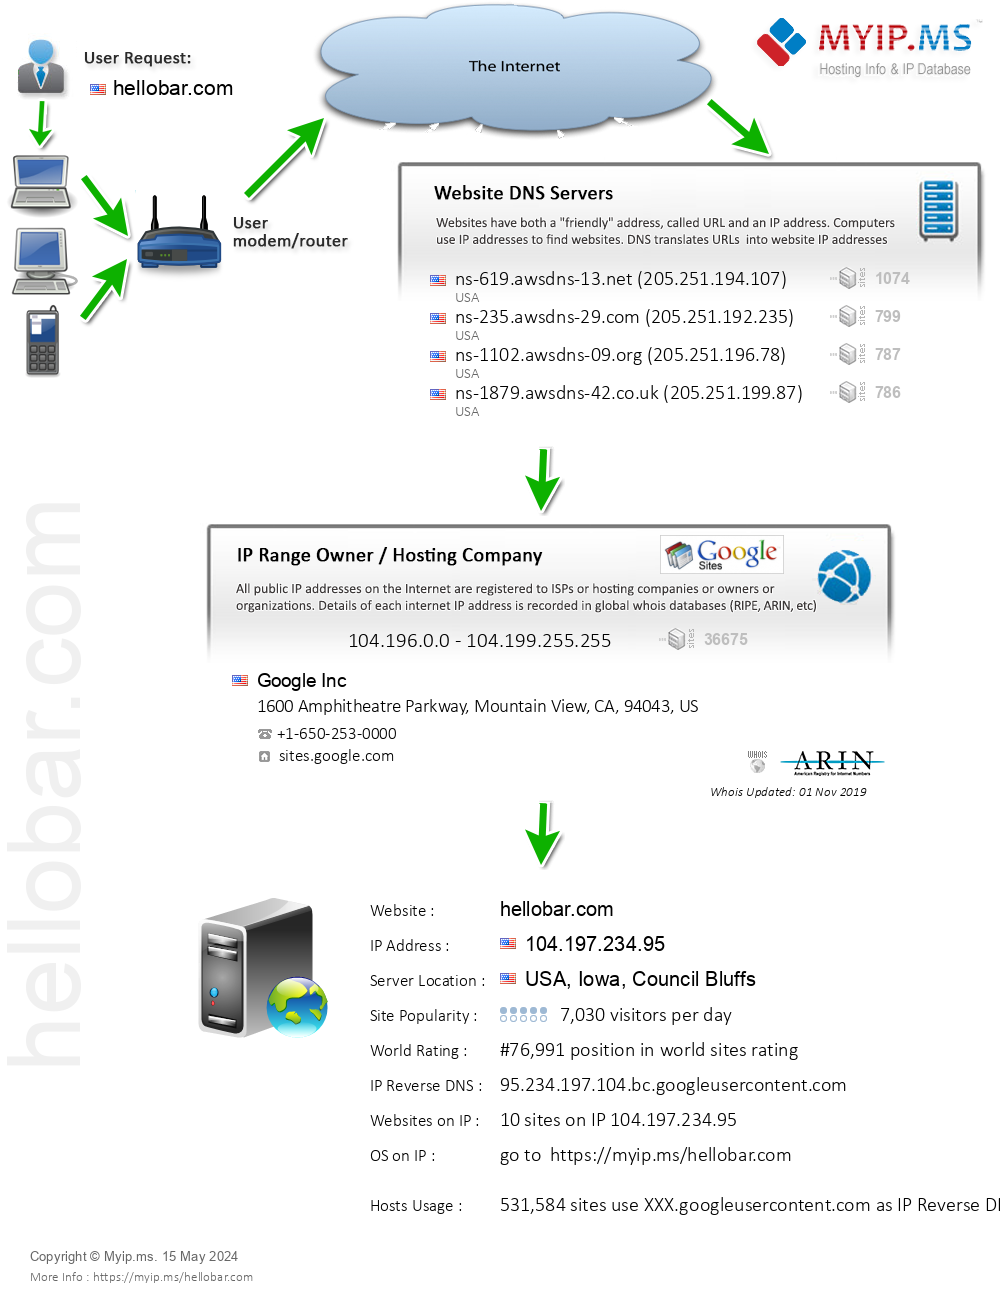 Hellobar.com - Website Hosting Visual IP Diagram